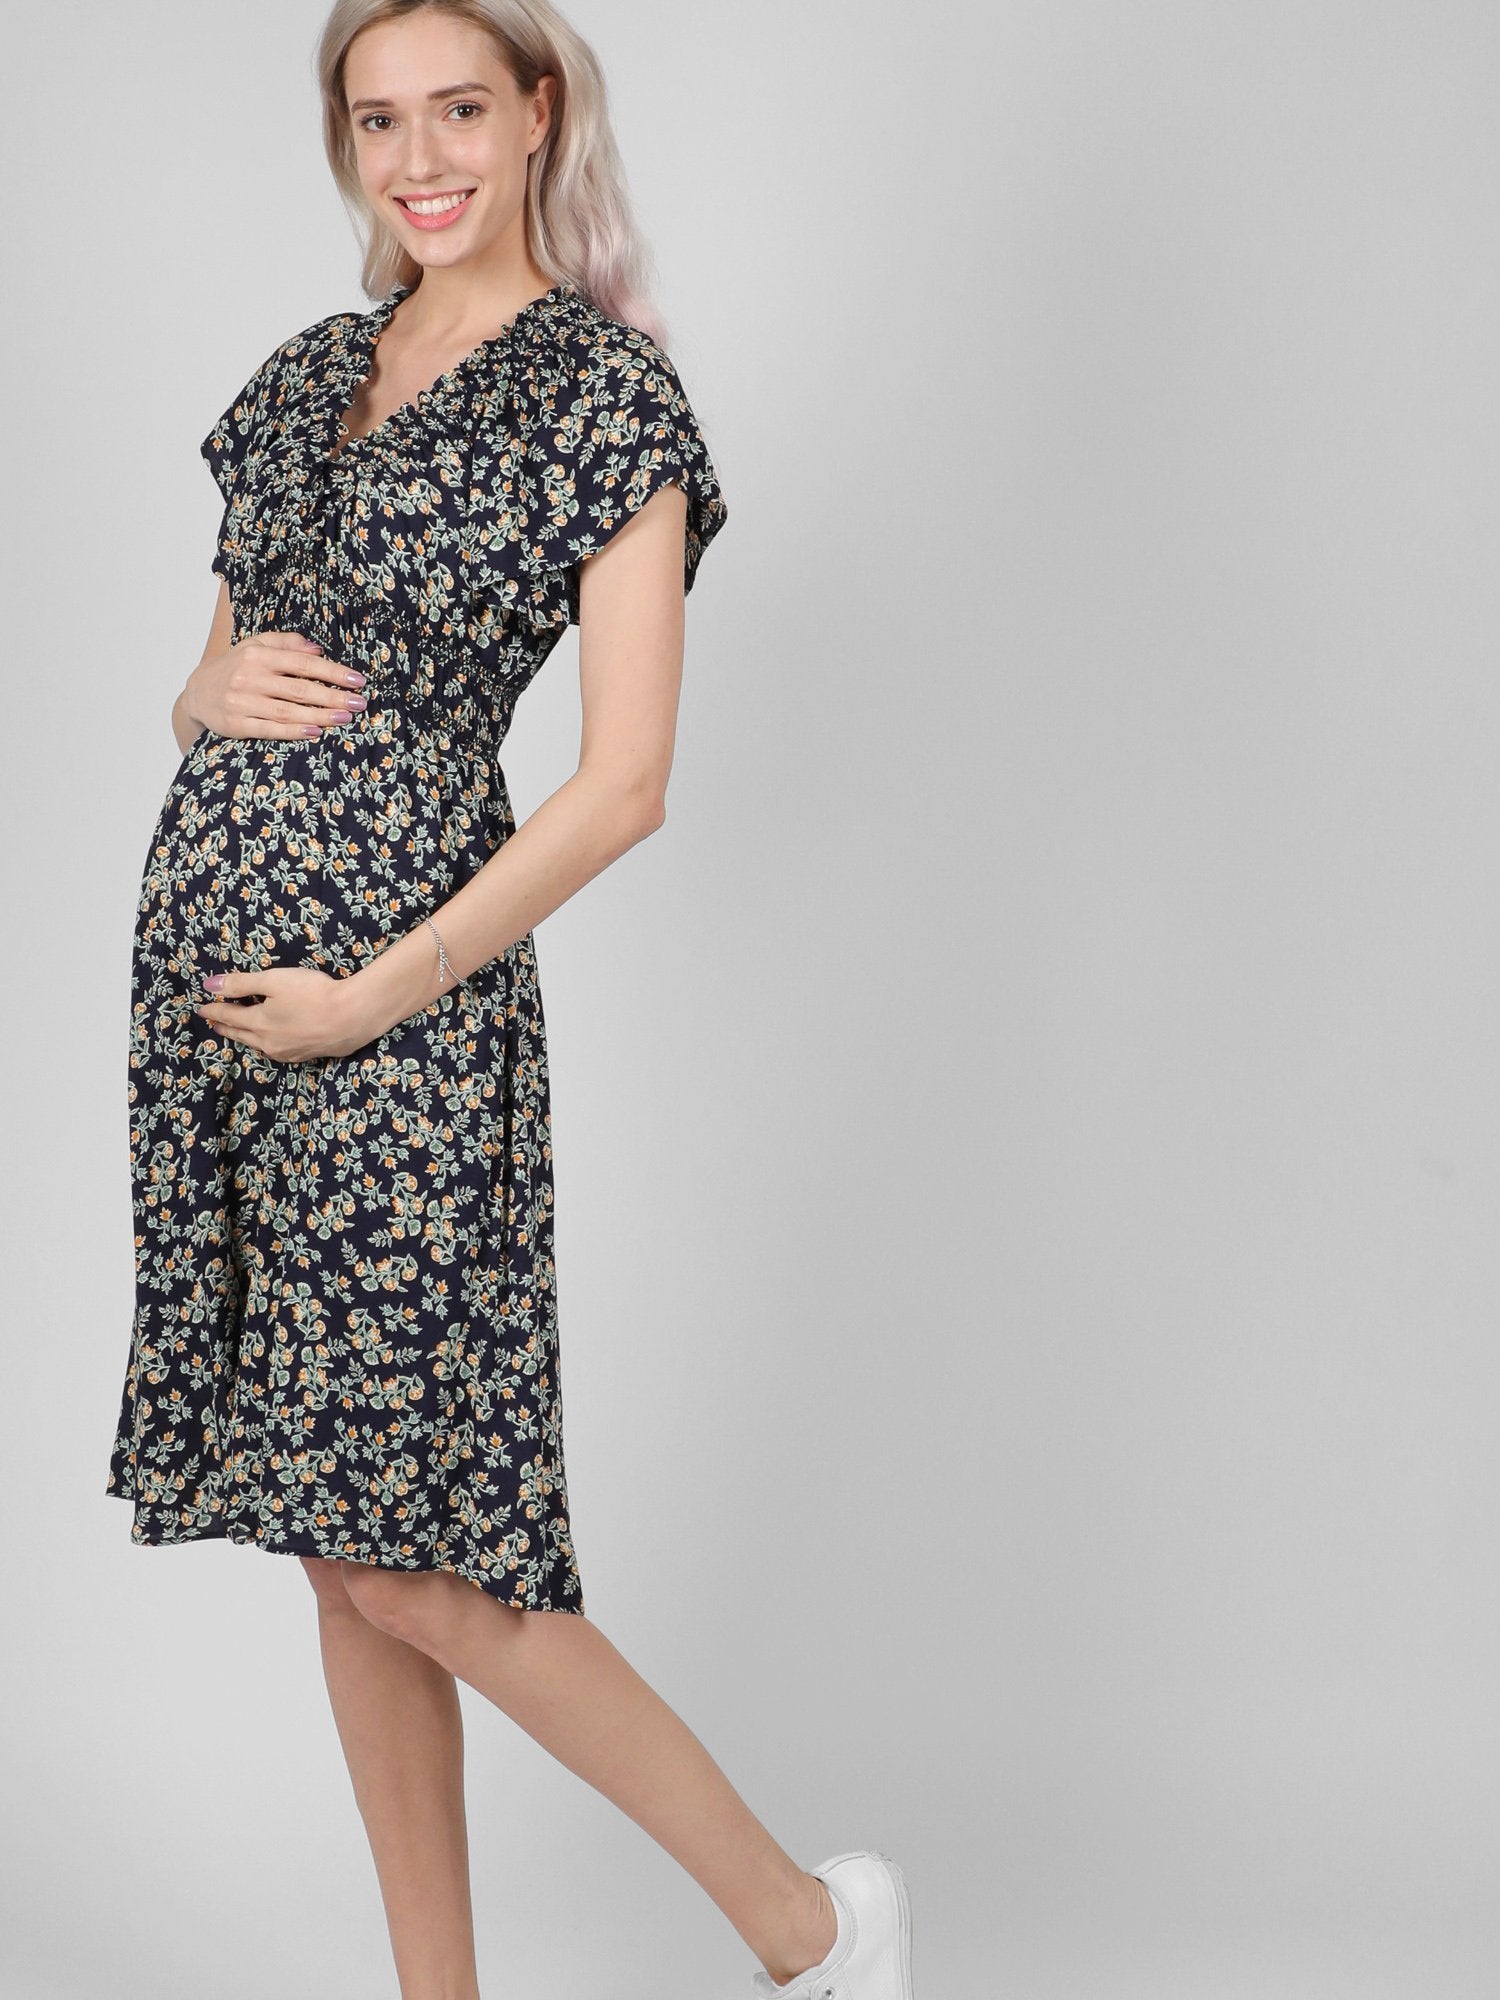 Bellefinery Fleur Maternity Nursing Dress